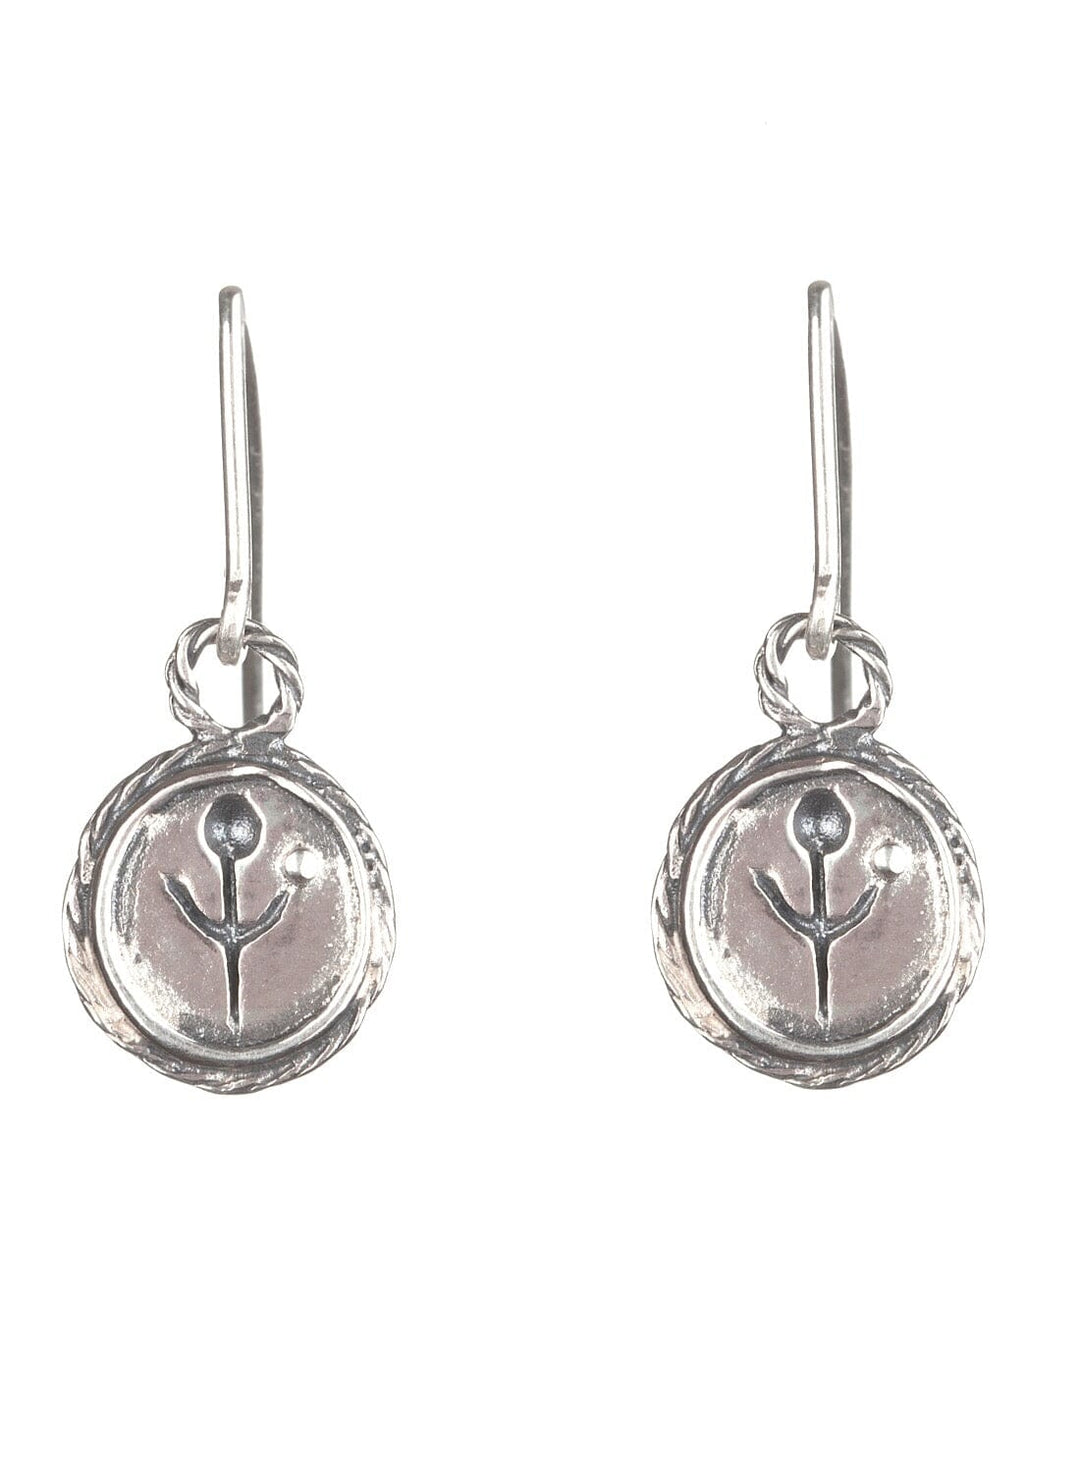 Silver Empanda Symbol Earrings Earrings YBDFinds 